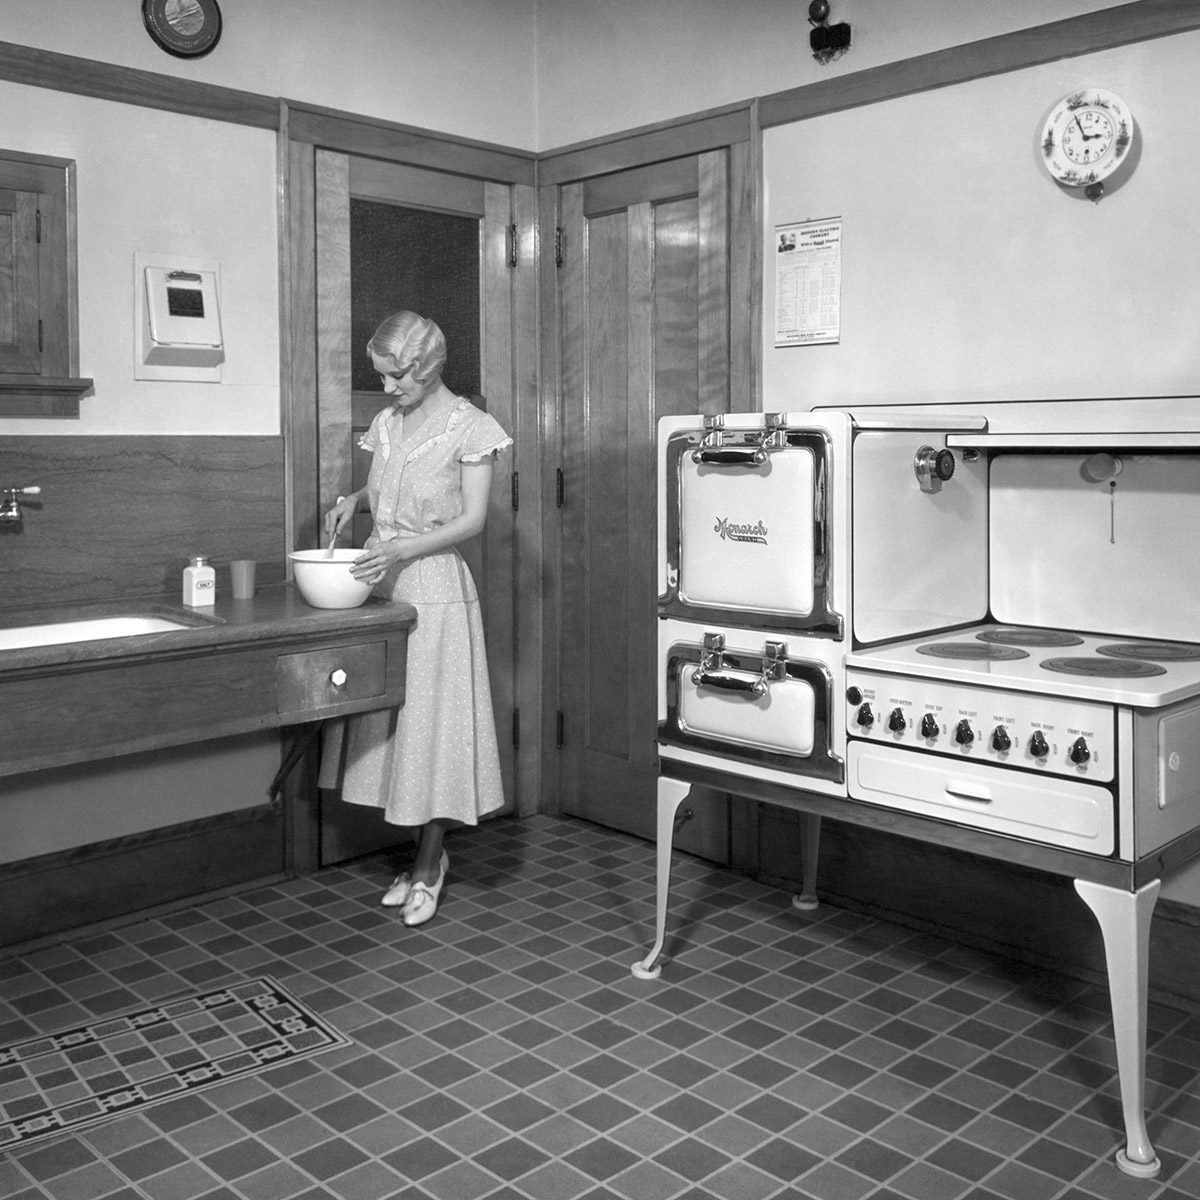 一个女人在她的厨房做饭，厨房配备了一个君主电炉。